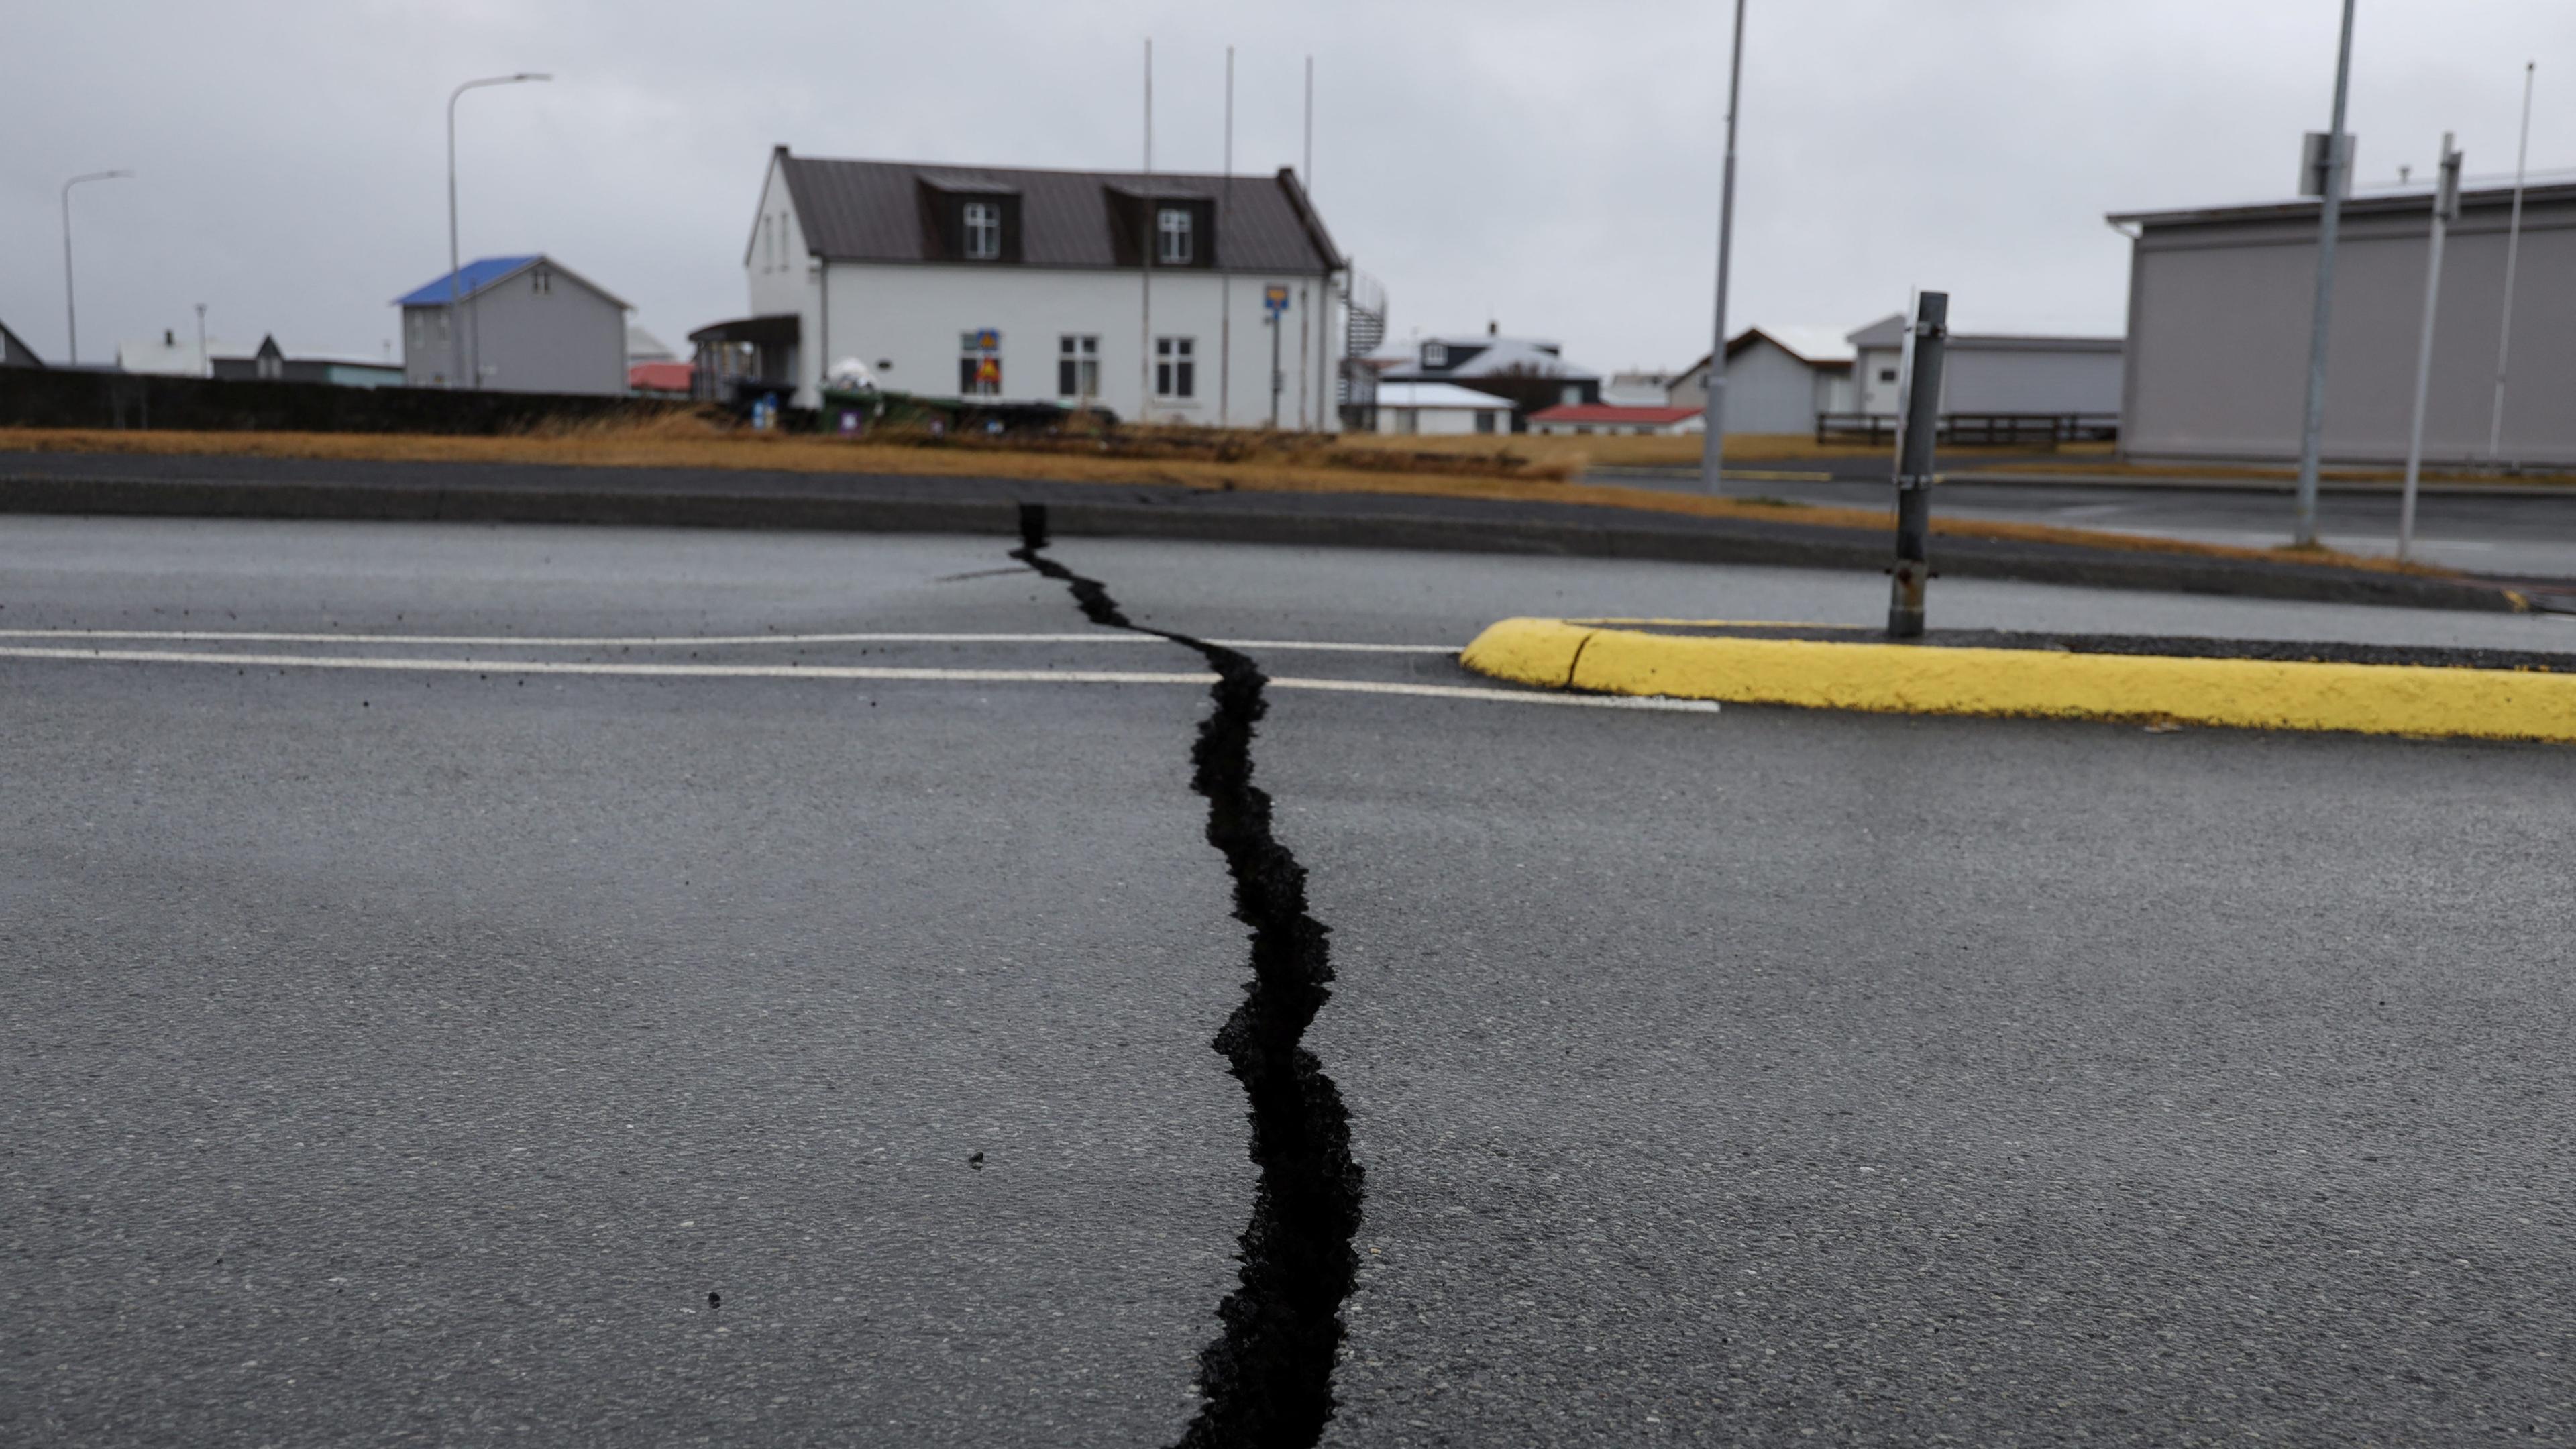 Risse auf einer Straße aufgrund vulkanischer Aktivität in der Nähe einer Polizeistation in Grindavik, Island